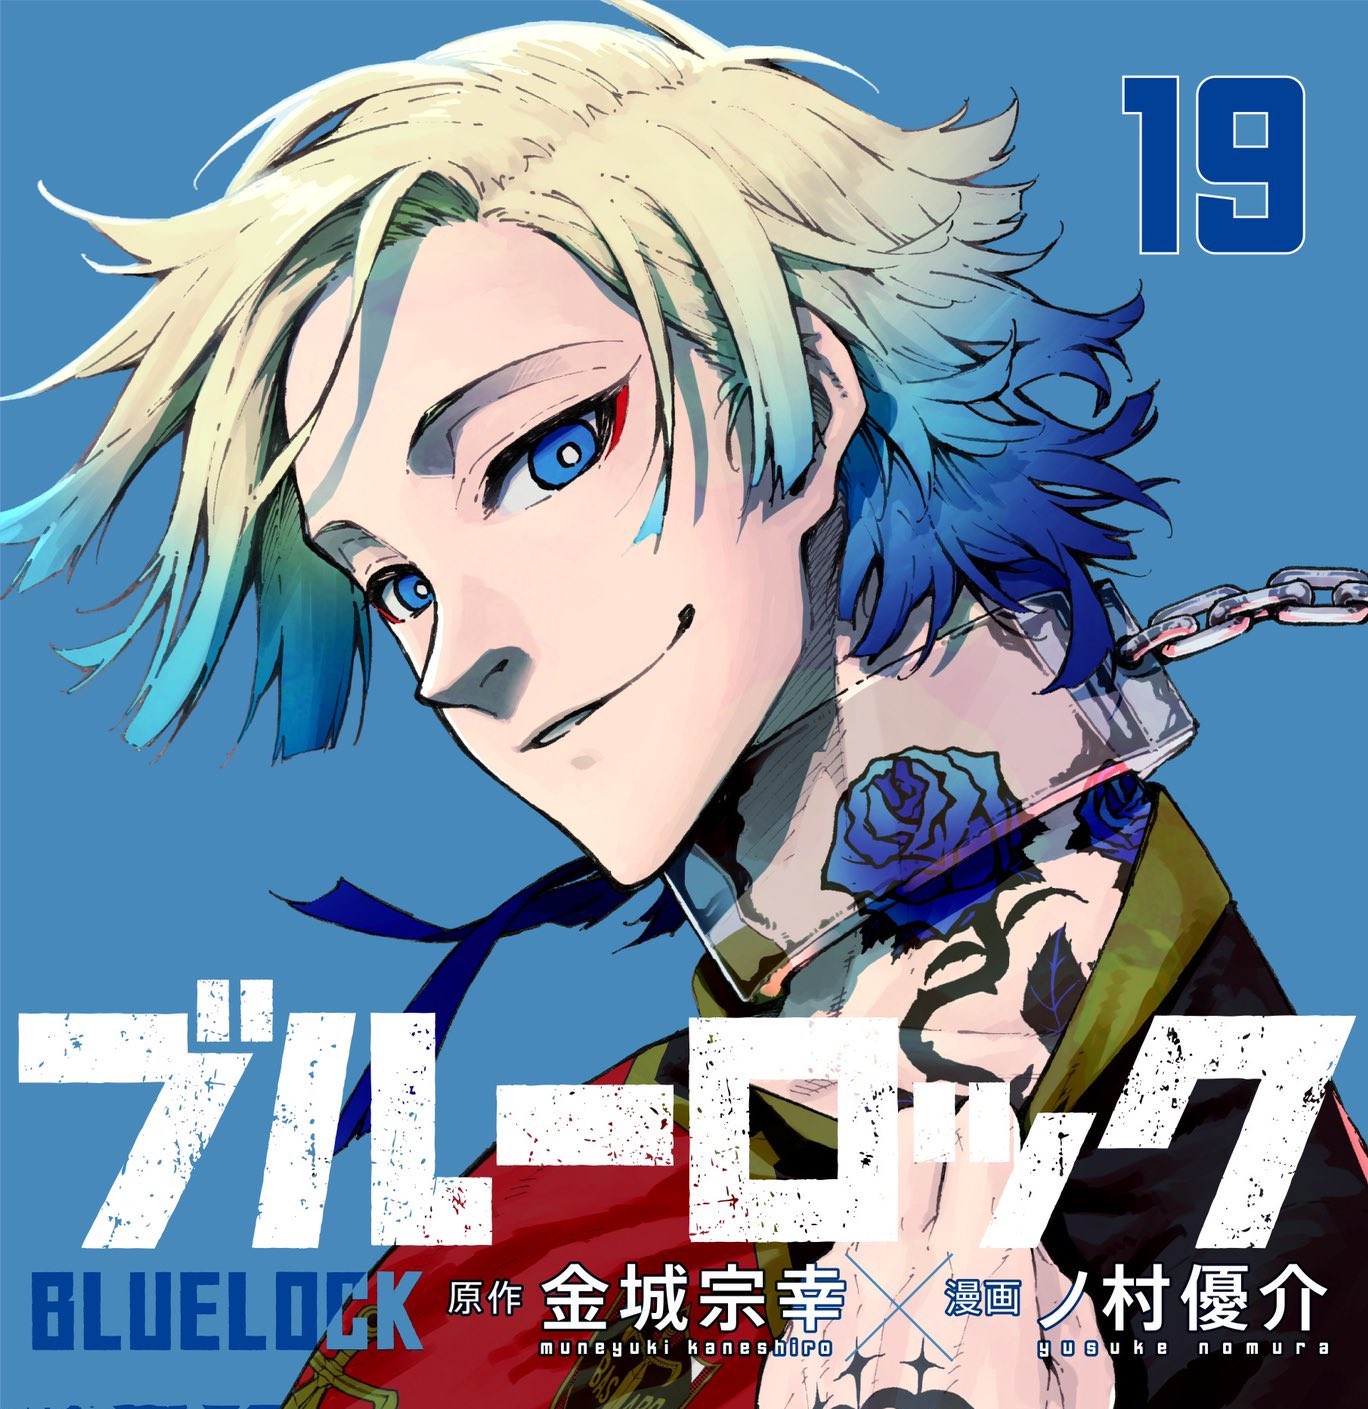 ブルーロック 19巻 カイザーの青い髪と首元の薔薇が目を引く 表紙解禁!